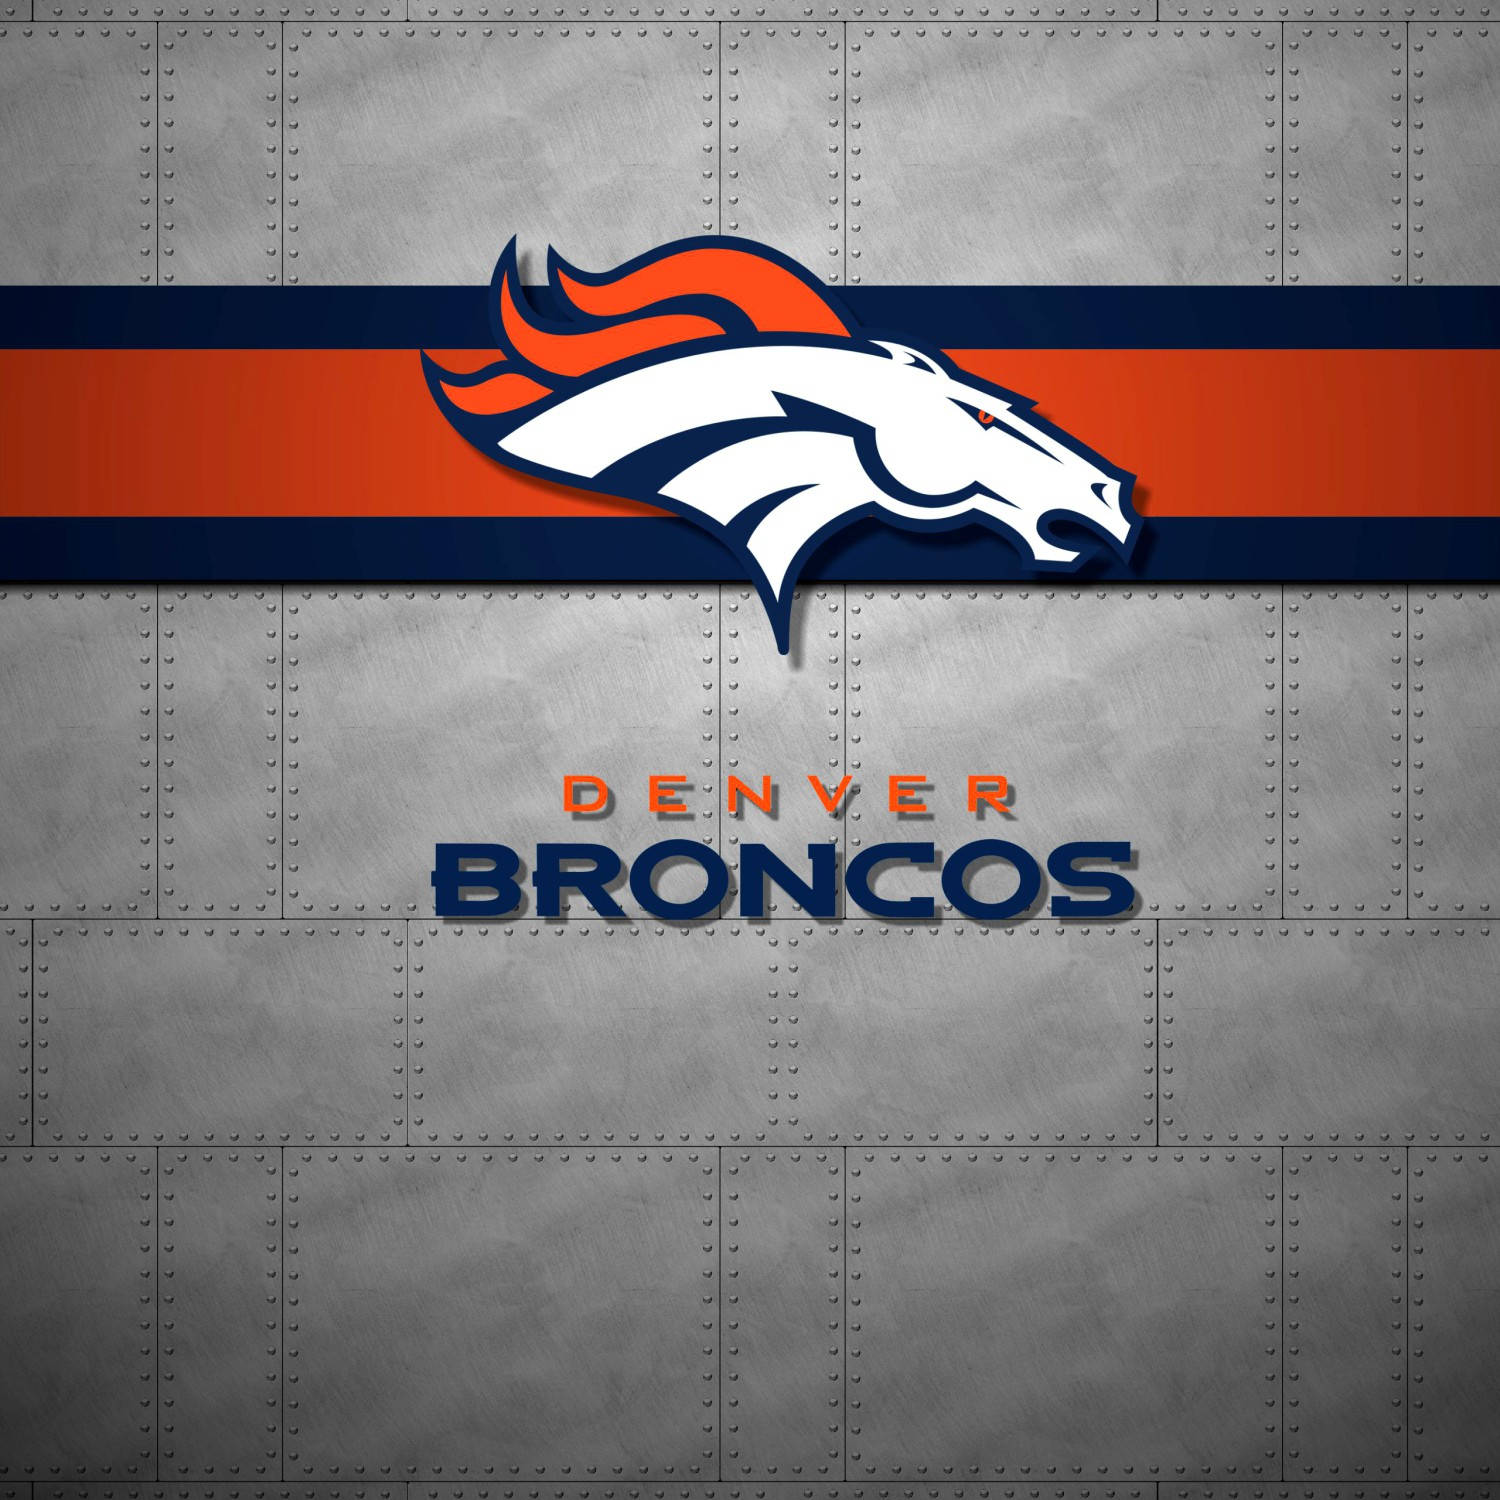 Denver Broncos iPhone-tapet: Et tapet til din iPhone som viser de berømte Denver Broncos. Wallpaper